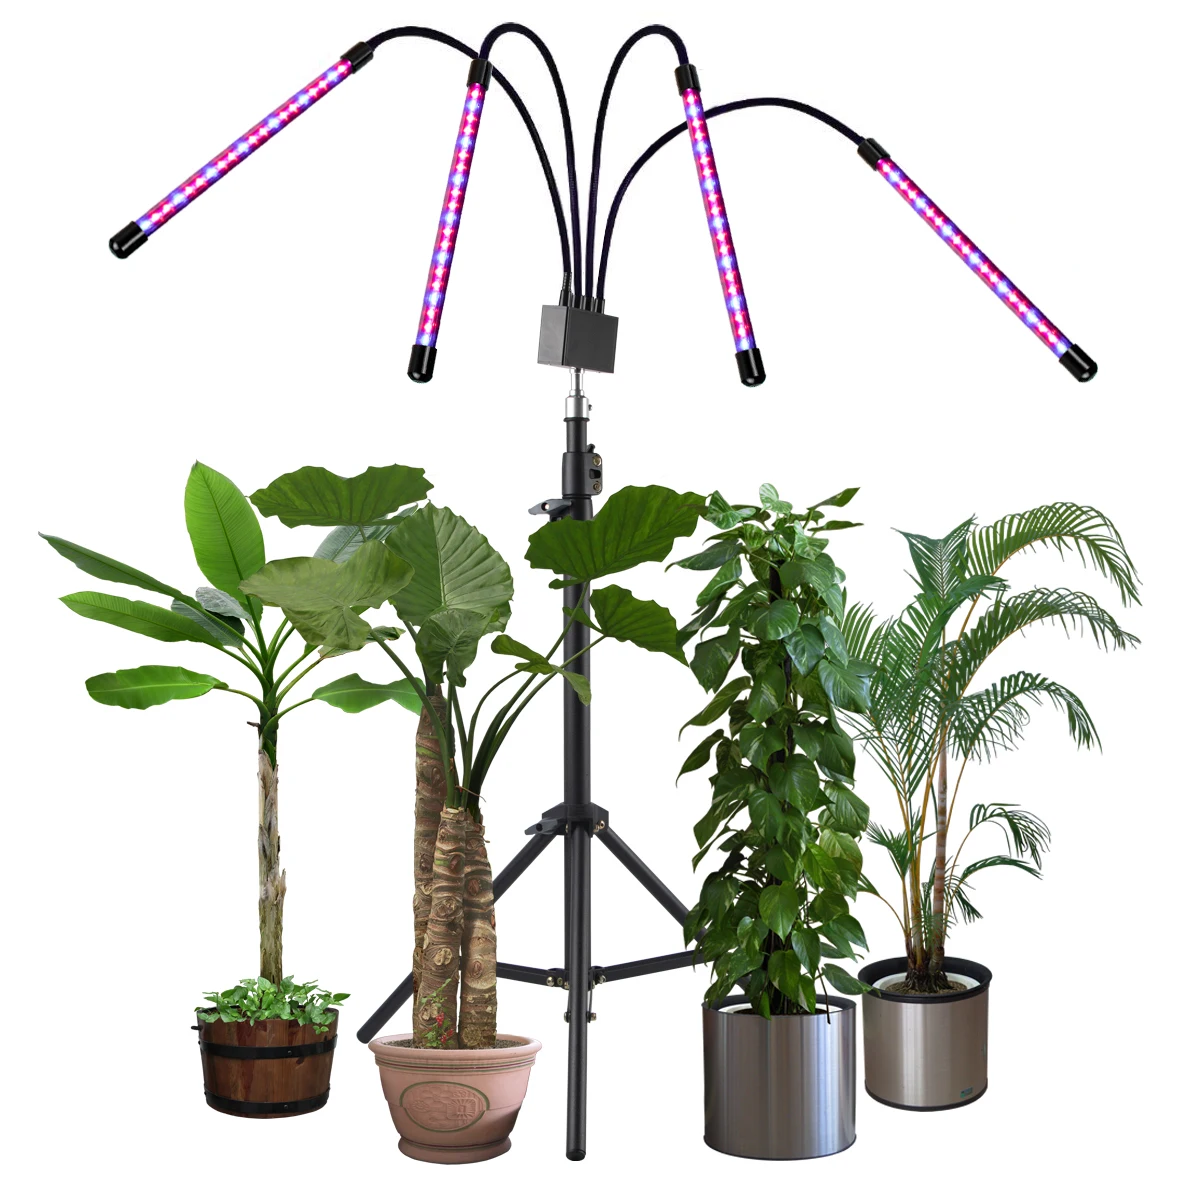 New Design 80W Tripod Stand Grow Light Floor Lamp for Indoor Plants Gardening Houseplants